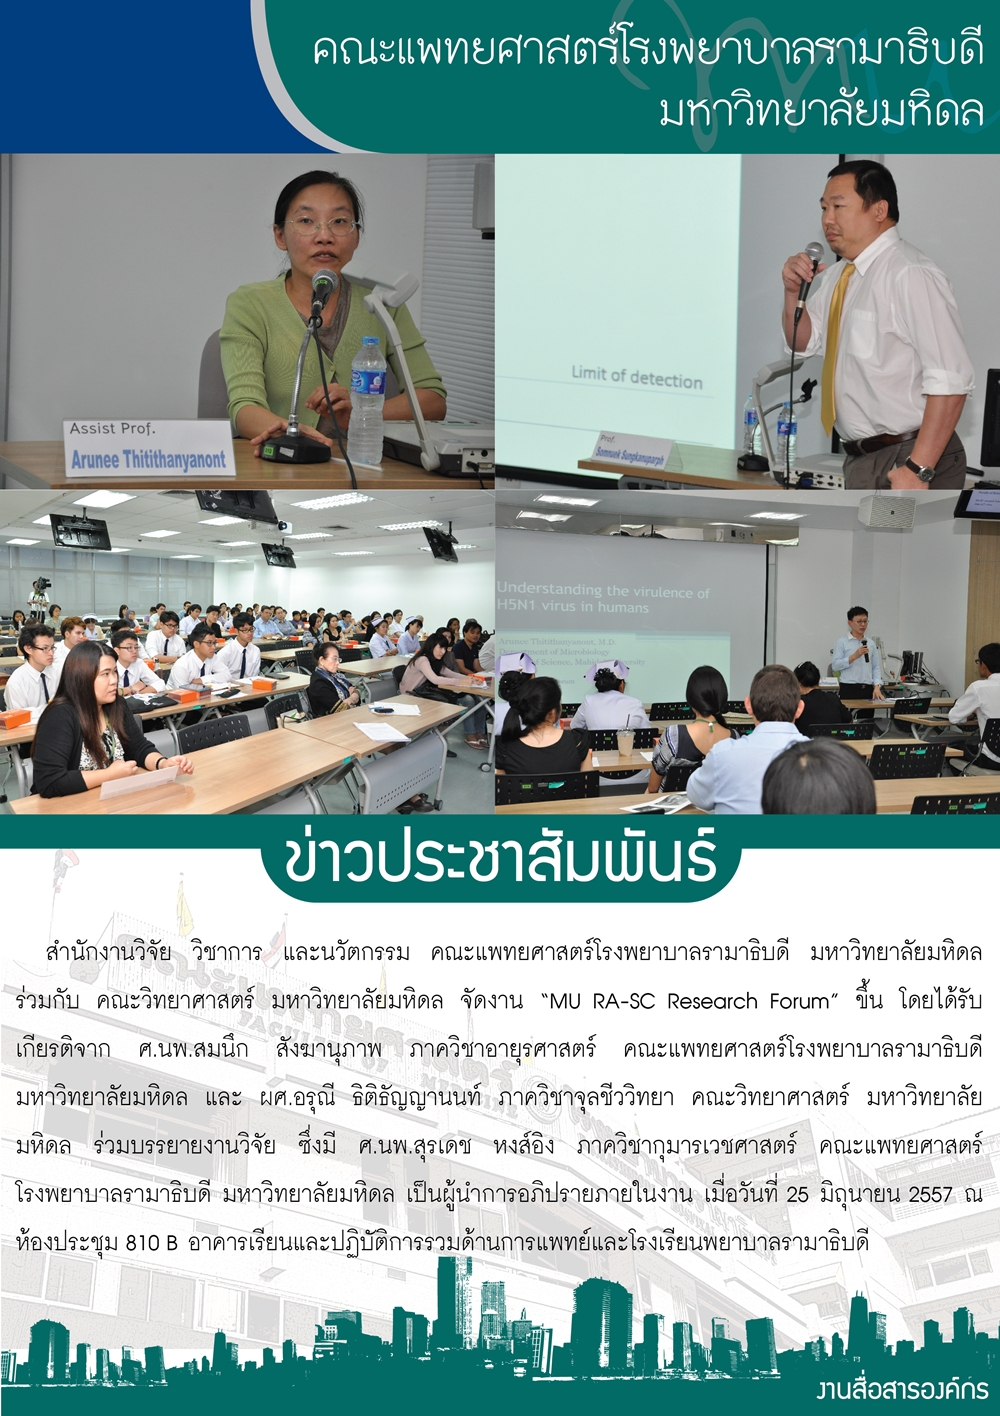 MU RA-SC Research Forum